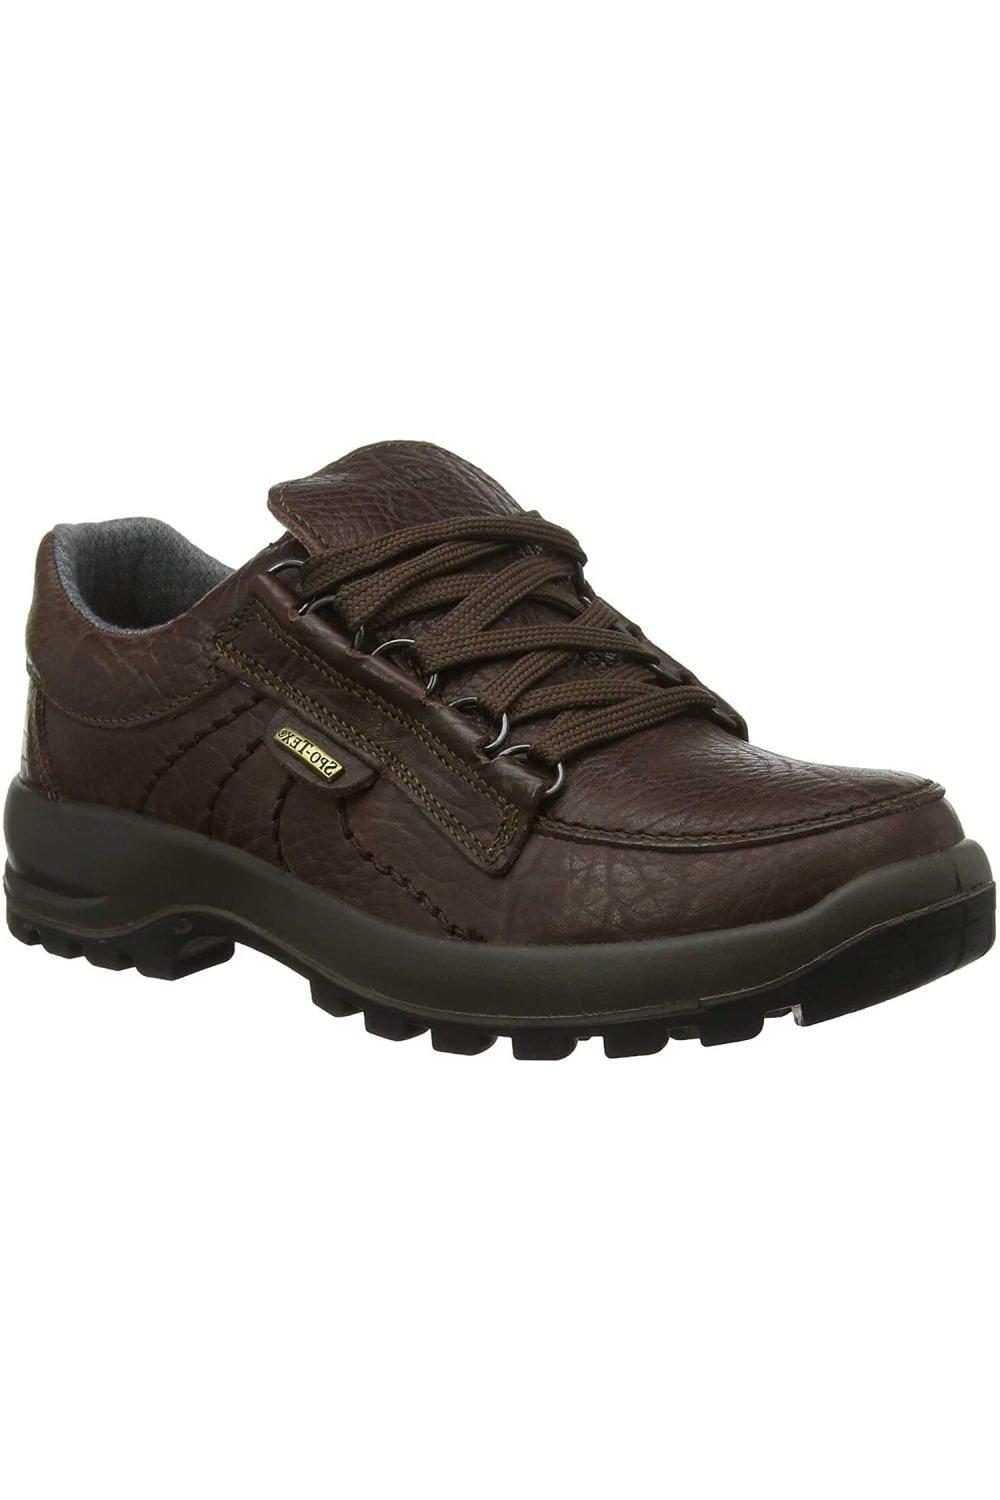 Kielder Grain Leather Walking Shoes